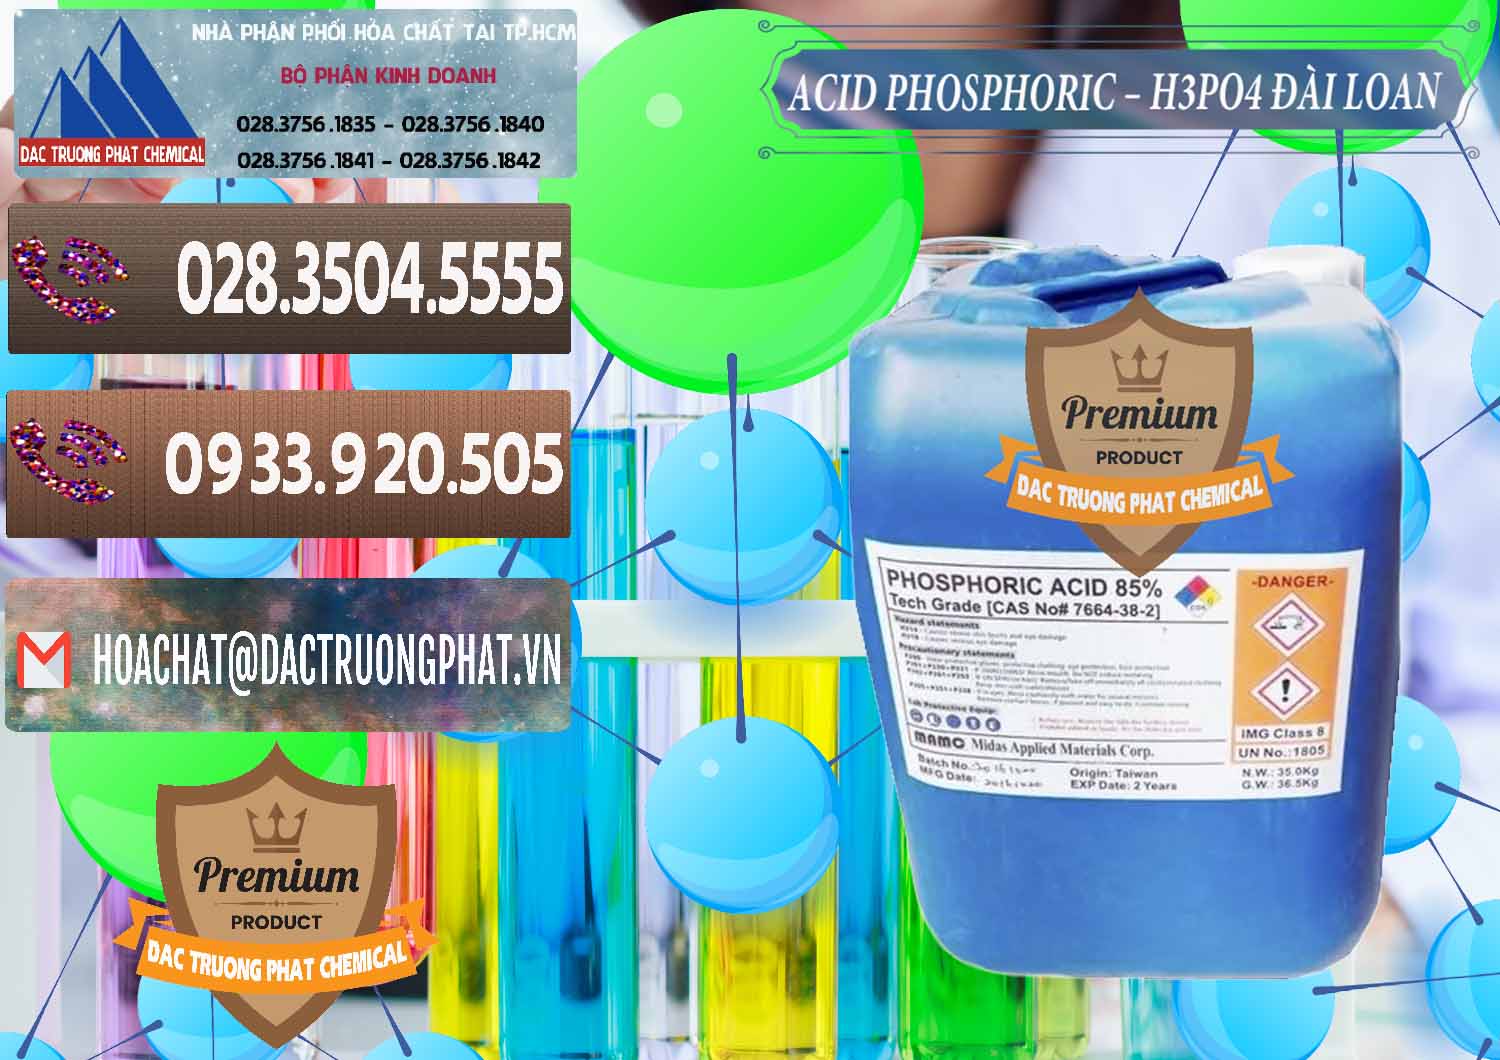 Nơi phân phối _ bán Axit Phosphoric - Acid Phosphoric H3PO4 85% Đài Loan Taiwan - 0351 - Cty cung cấp - nhập khẩu hóa chất tại TP.HCM - hoachatviet.net